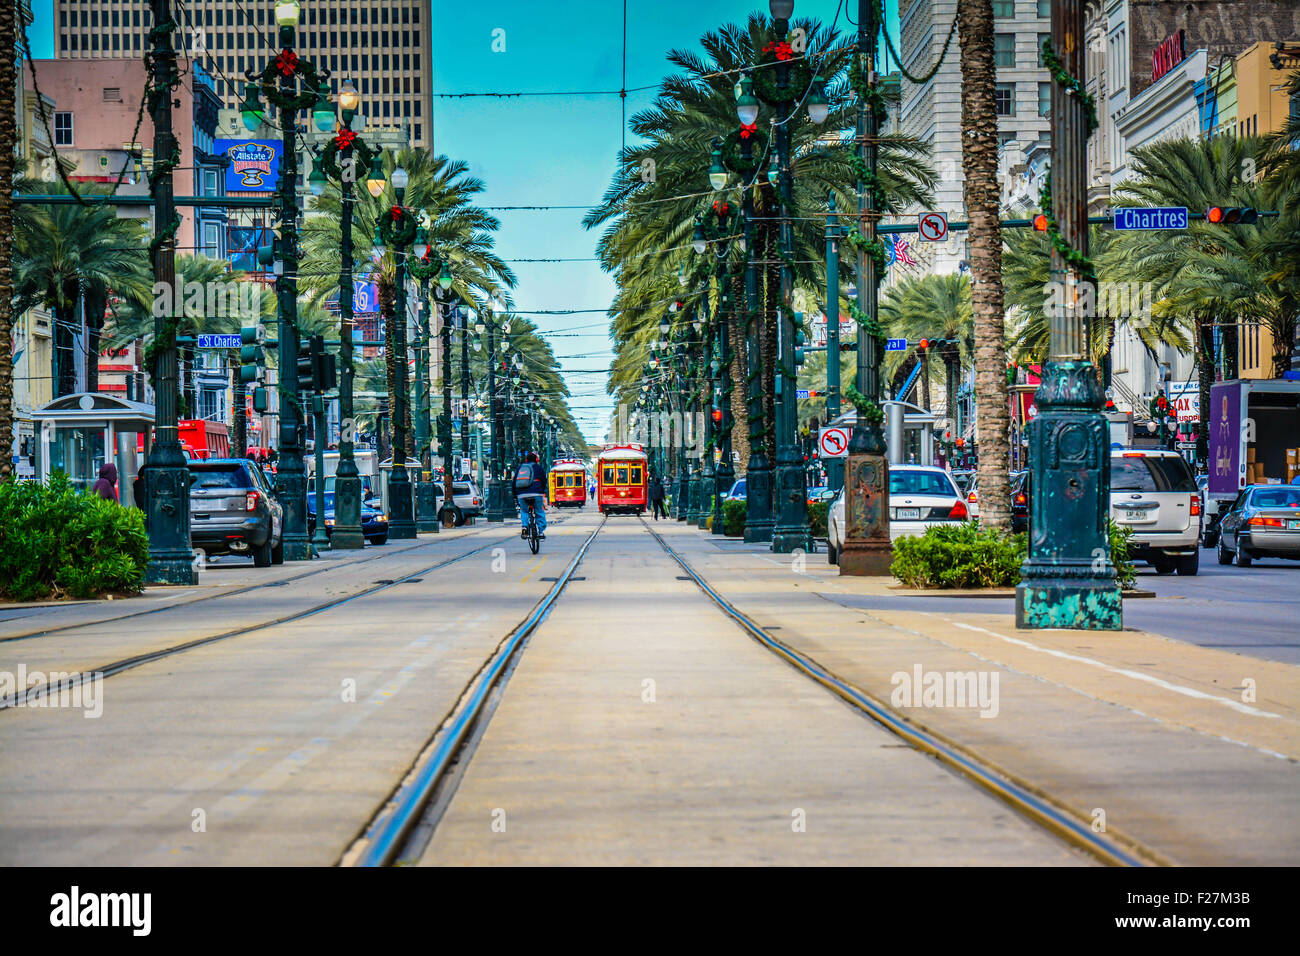 Auf der Suche nach unten Palme Straßenbahnschienen und fernen Straßenbahnen und Menschen in New Orleans, LA Canal Street gesäumt Stockfoto